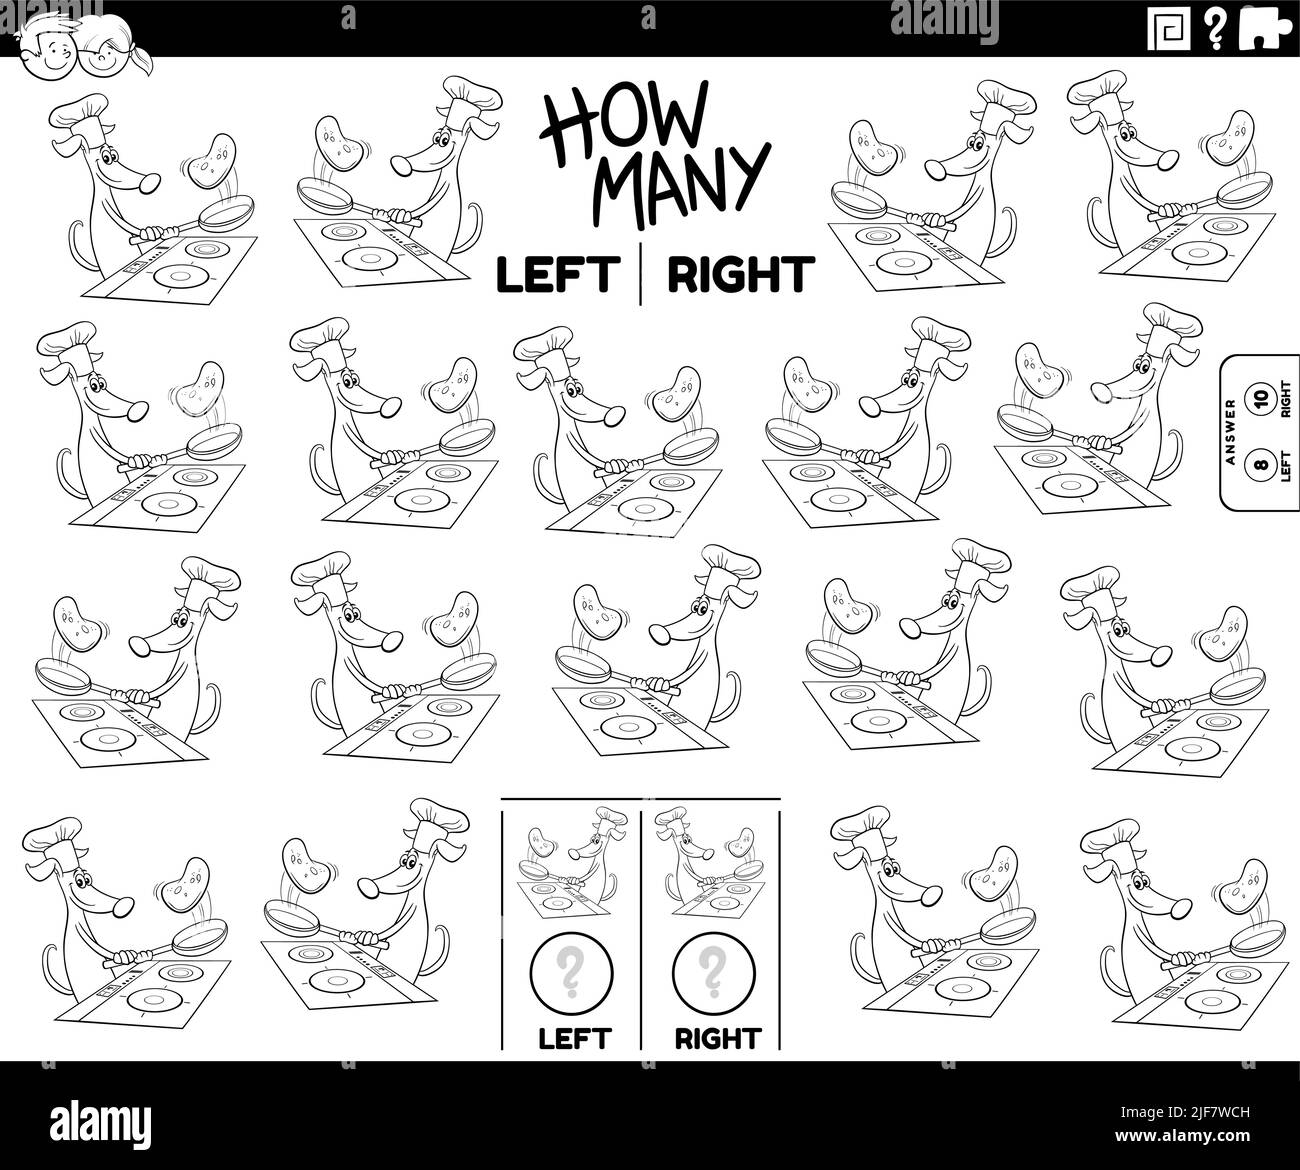 Schwarz-Weiß-Cartoon-Illustration der pädagogischen Aufgabe der Zählung links und rechts orientierte Bilder von Comic-Hund machen Pfannkuchen Malseite Stock Vektor